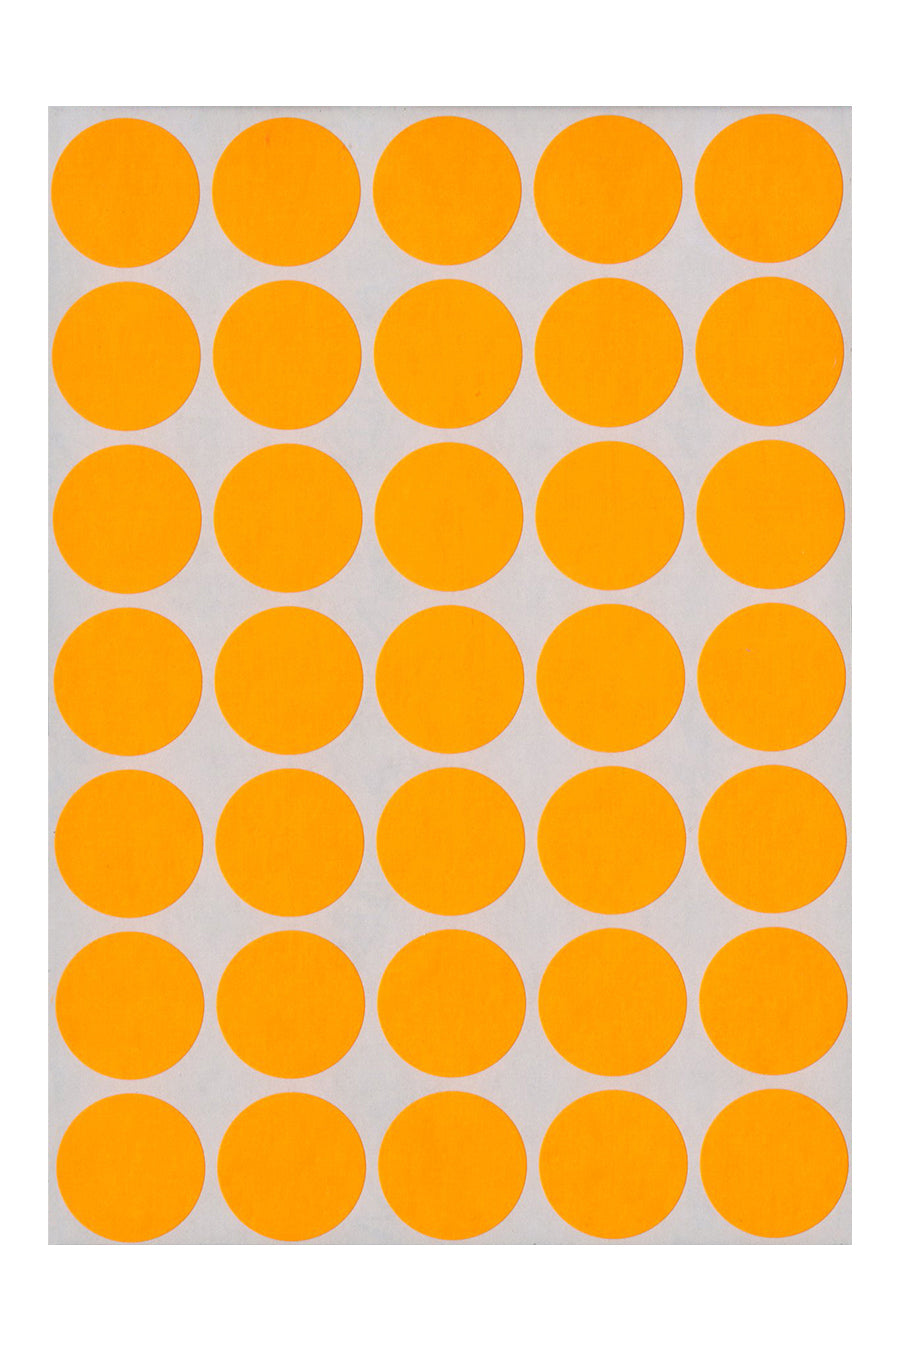 3/4" Dia. Color Coding Labels, Orange Neon, 1000/Bx